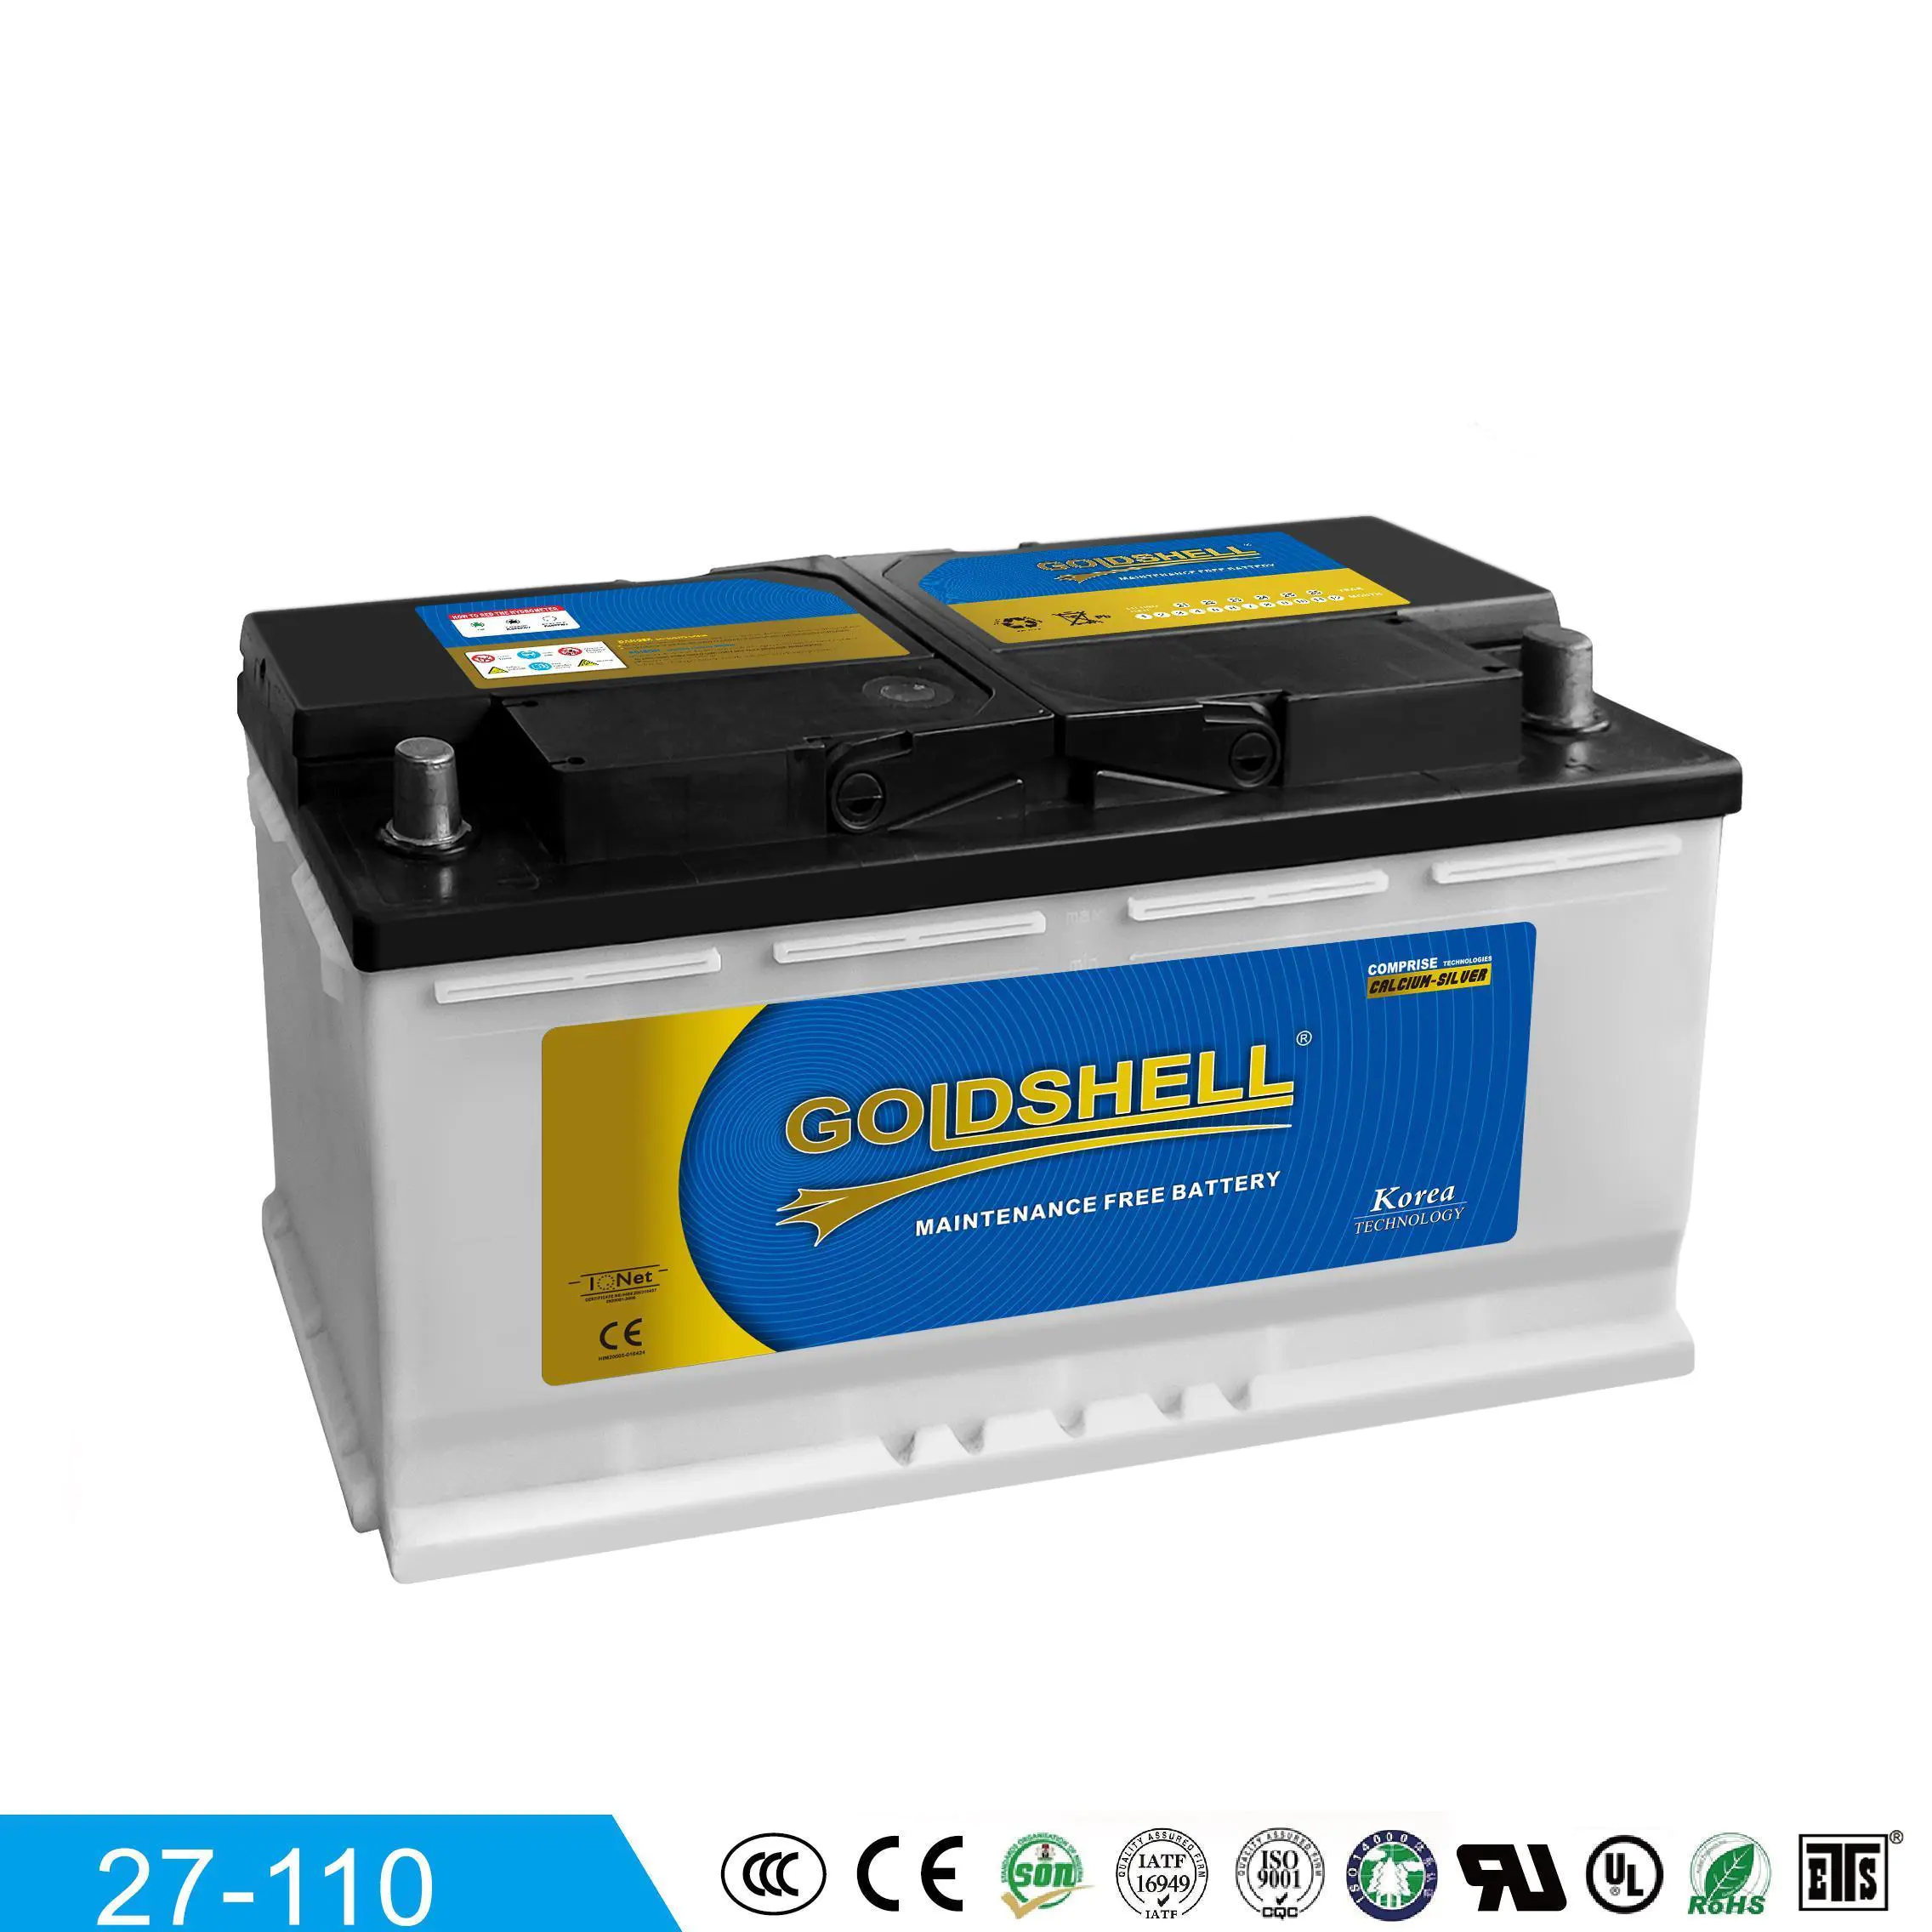 GOLDSHELL  MF Car battery 27-110 12V100AH